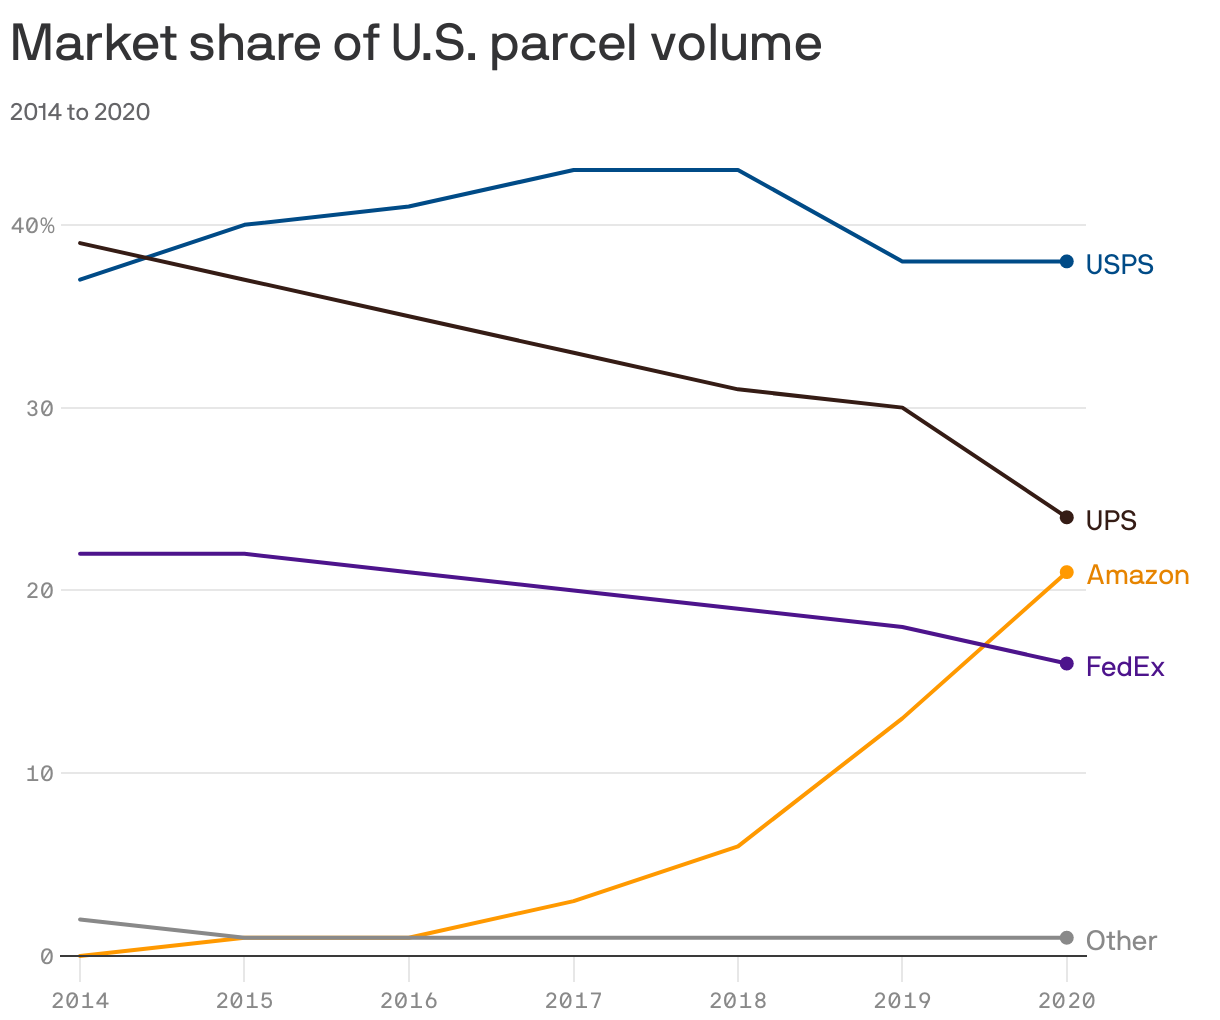 Market share of U.S. parcel volume